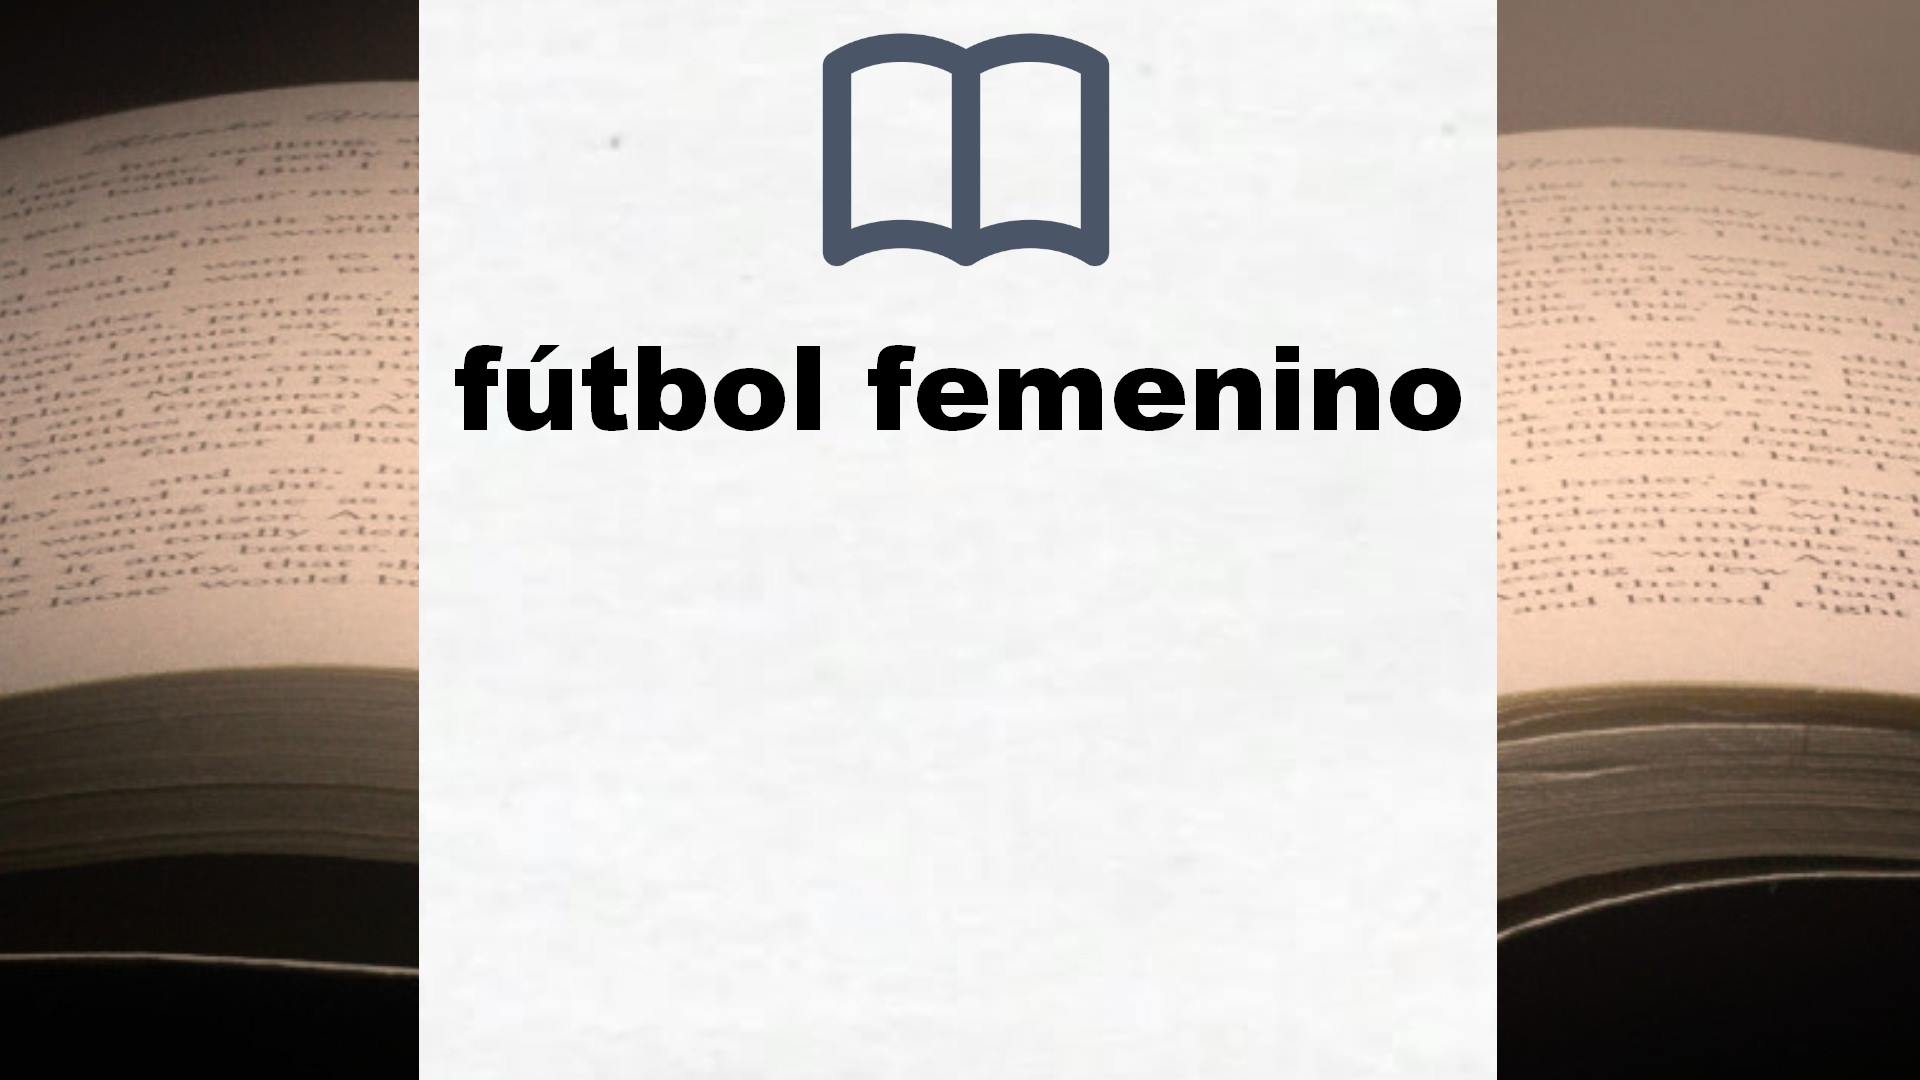 Libros sobre fútbol femenino